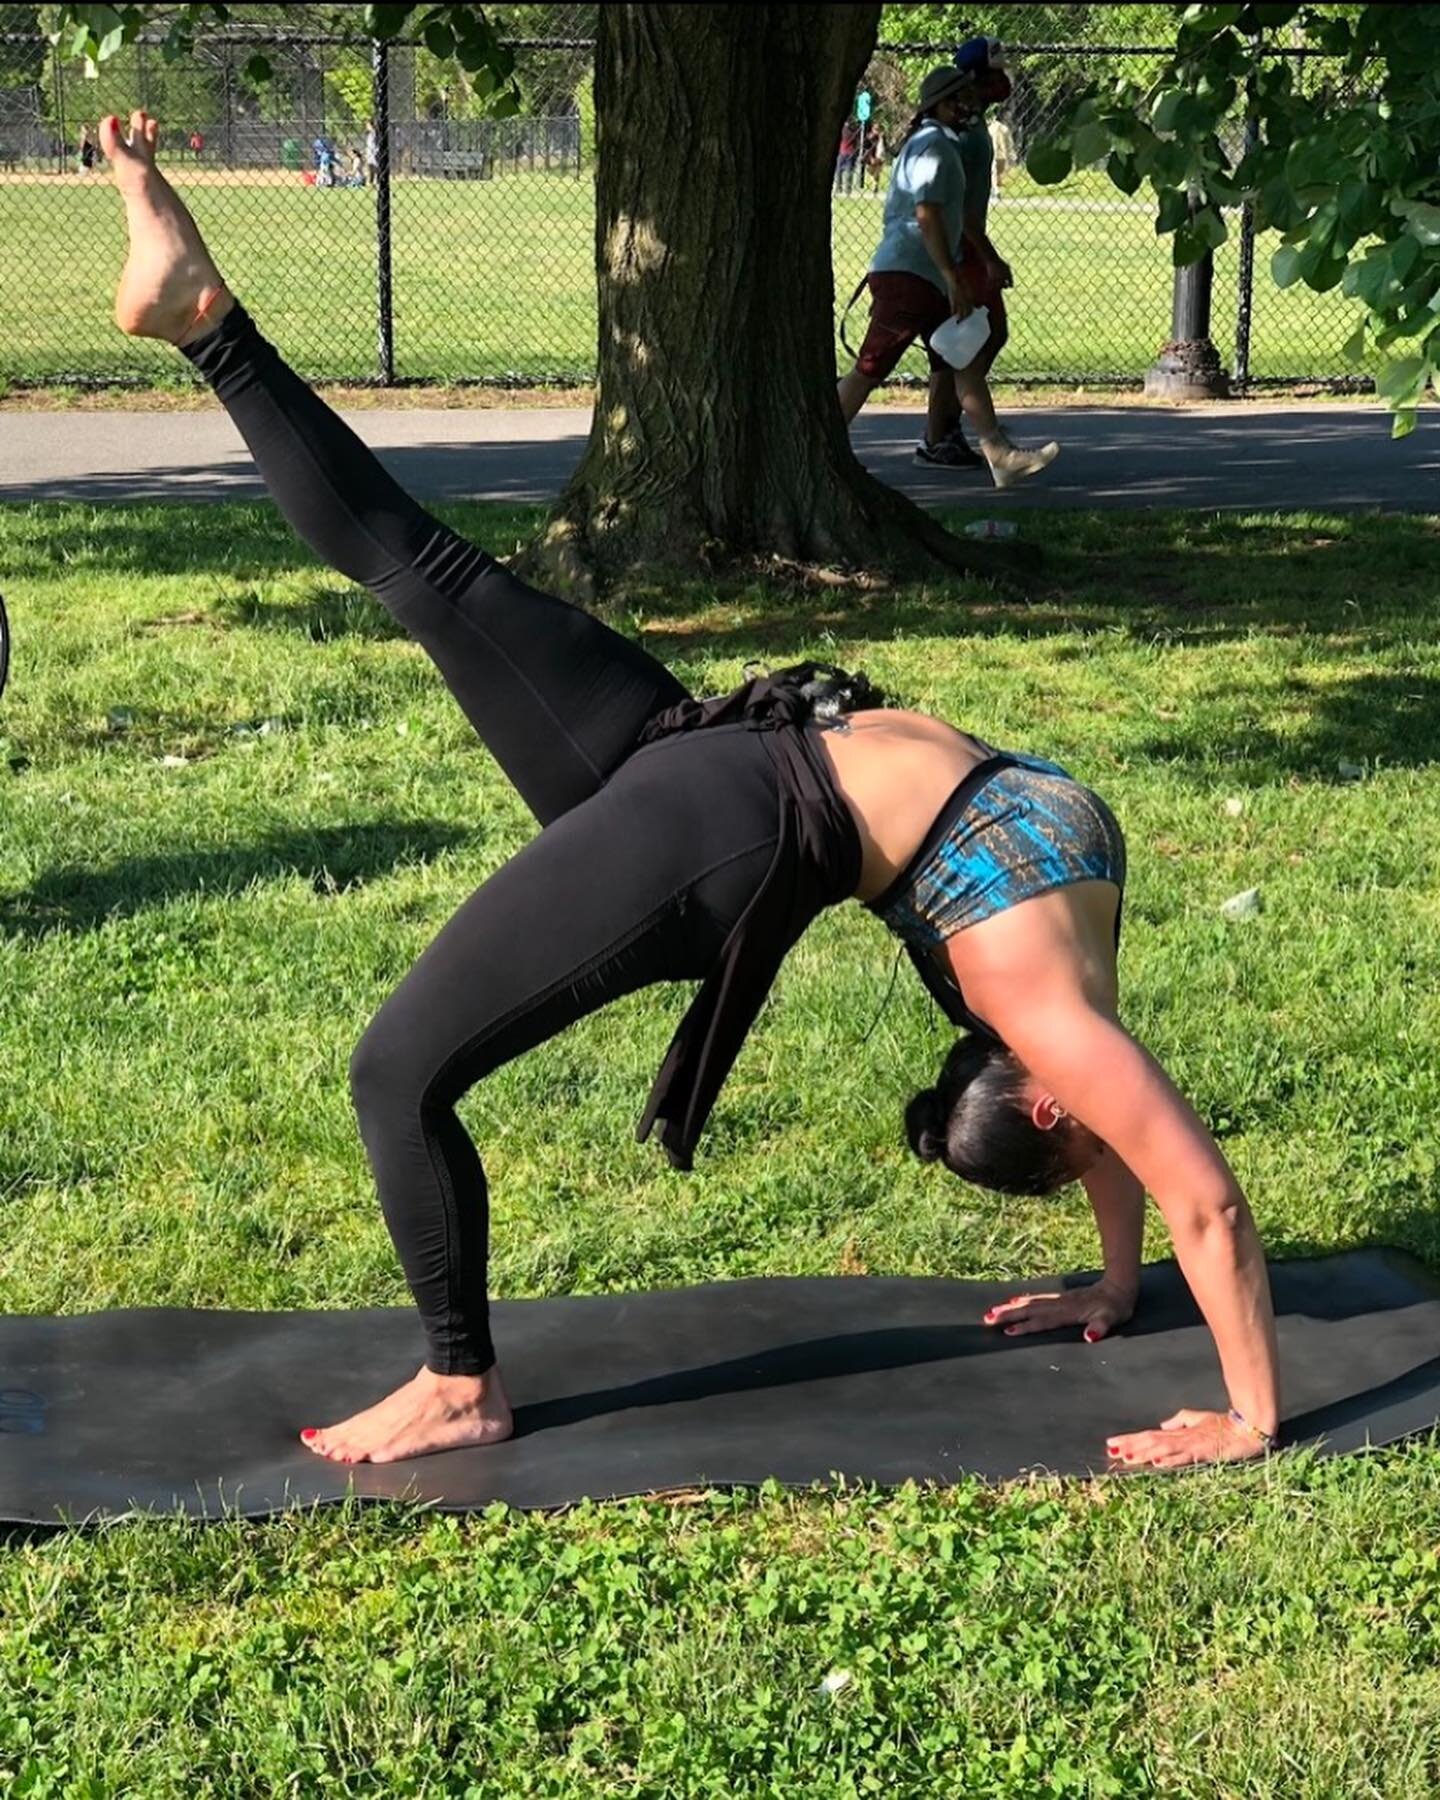 Conoce a Catherine Llopis 

El camino de Catherine en el yoga comenzó en 2005 en Crunch Fitness, en el Soho, después de que su entrenador de boxeo le hiciera la sugerencia. Ella ha sido una practicante de yoga, de vez en cuando, desde entonces. Hasta 2016, cuando se dec